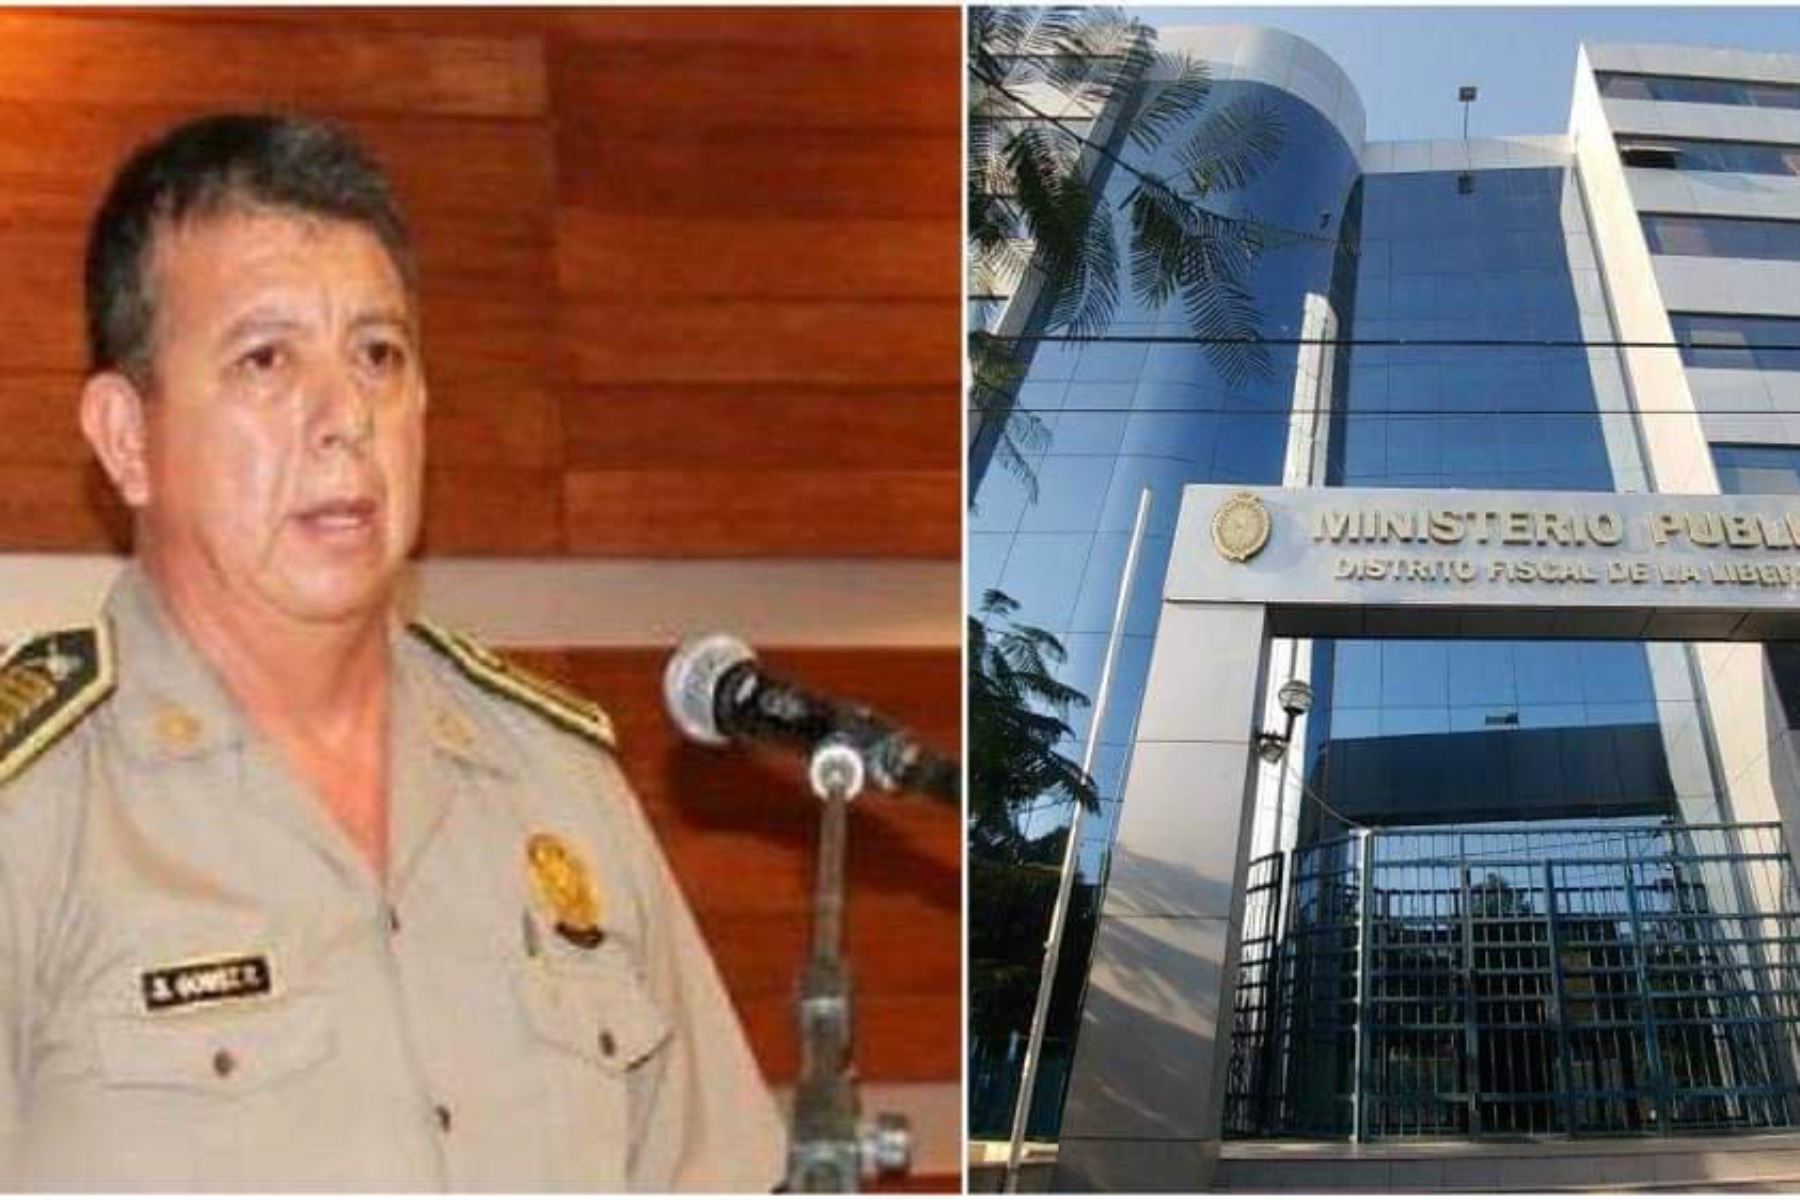 El coronel PNP Segundo Demetrio Gómez Reyna (52), quien es investigado por presuntas irregularidades en la administración de fondos de la Escuela de Educación Superior Técnico Profesional de Trujillo.